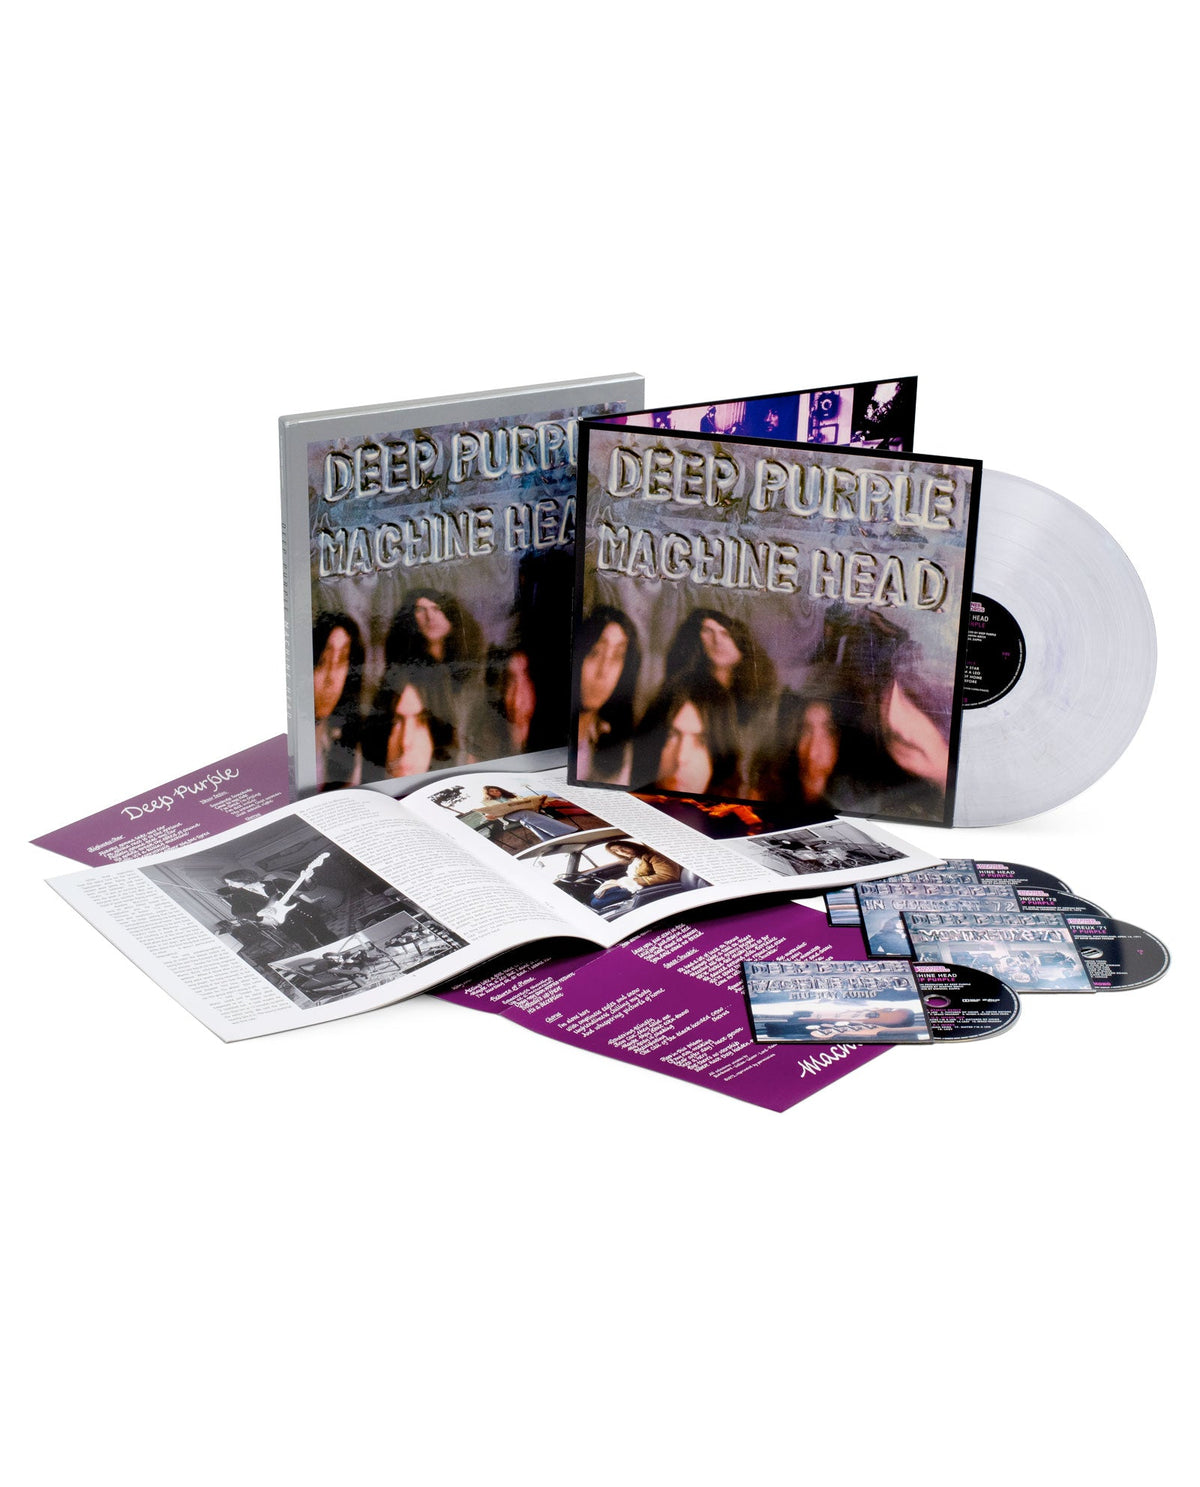 Deep Purple - Box Set LP Vinilo + CD (3CD) + Blu-Ray "Machine Head" (50 Aniversario) - D2fy · Rocktud - Rocktud